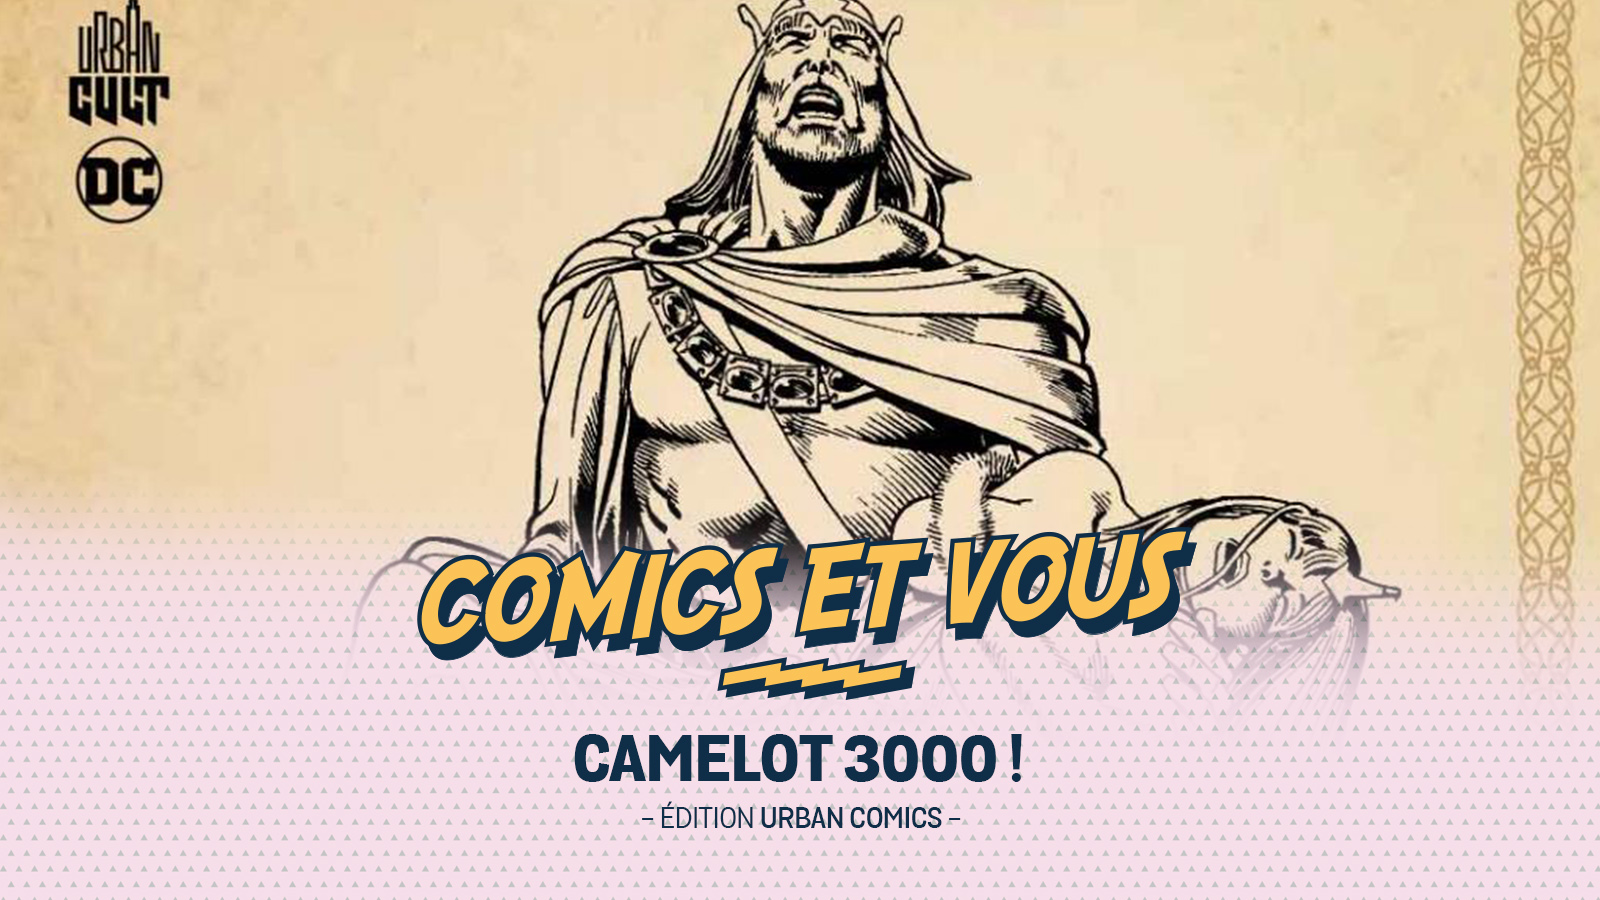 Camelot 3000, pour ceux qui apprécient la science-fiction